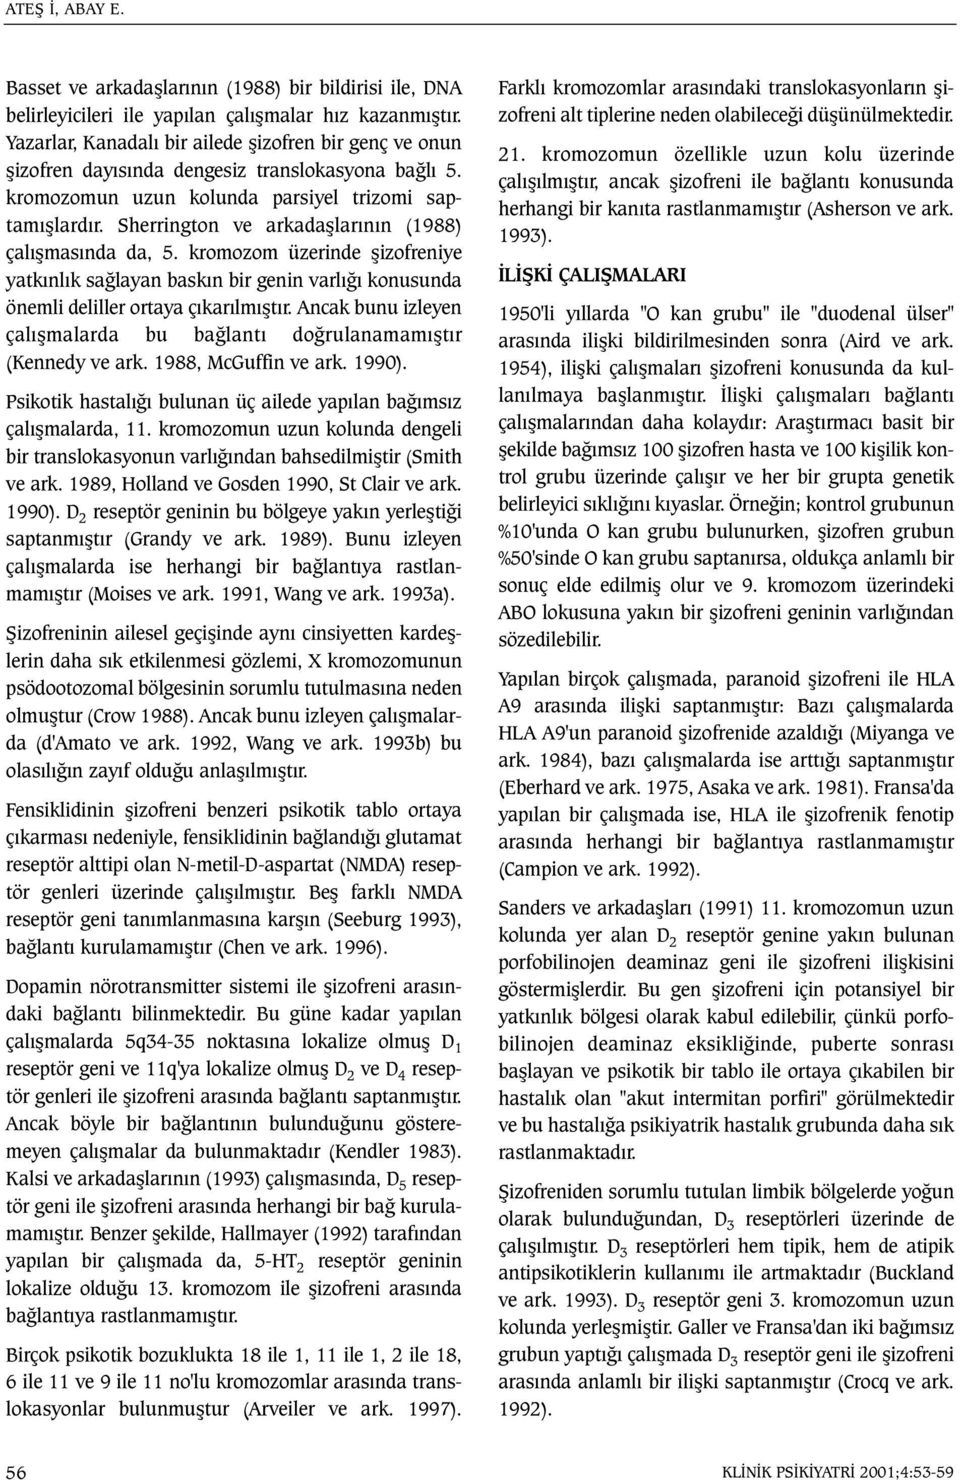 Sherrington ve arkadaþlarýnýn (1988) çalýþmasýnda da, 5. kromozom üzerinde þizofreniye yatkýnlýk saðlayan baskýn bir genin varlýðý konusunda önemli deliller ortaya çýkarýlmýþtýr.